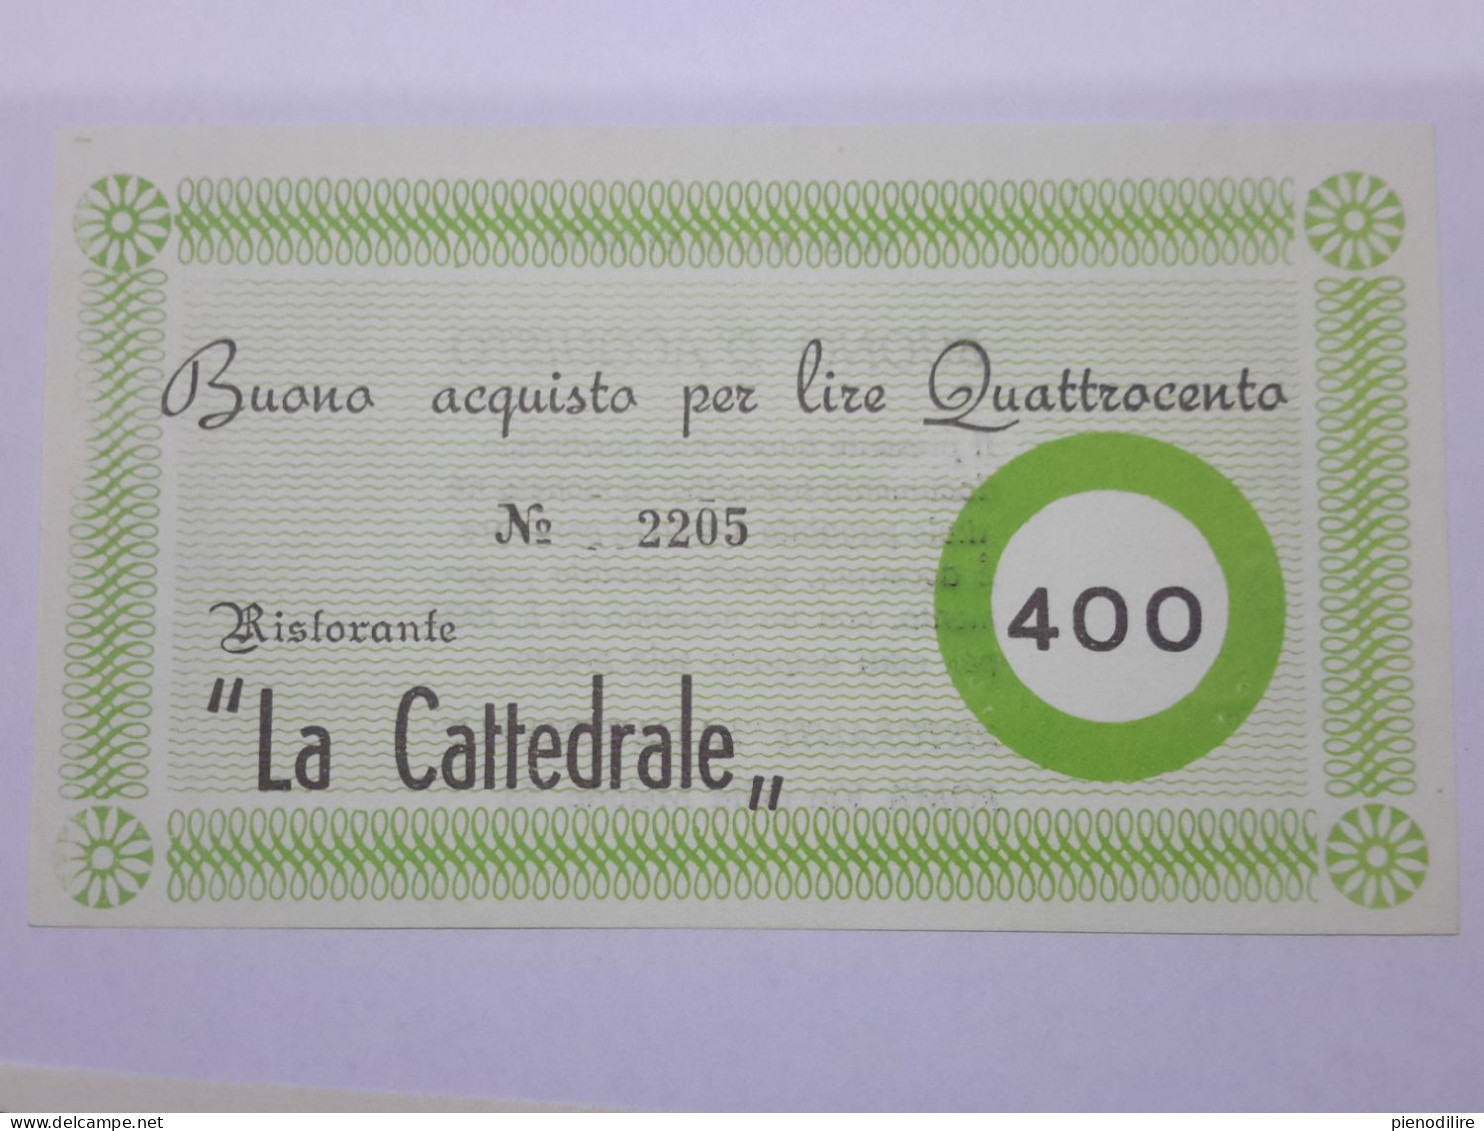 LOTTO 4Pz. 100 200 300 400 LIRE BUONI ACQUISTO RISTORANTE LA CATTEDRALE ROMA VALIDO FINO AL 31.12.1976 (A.4) - [10] Assegni E Miniassegni